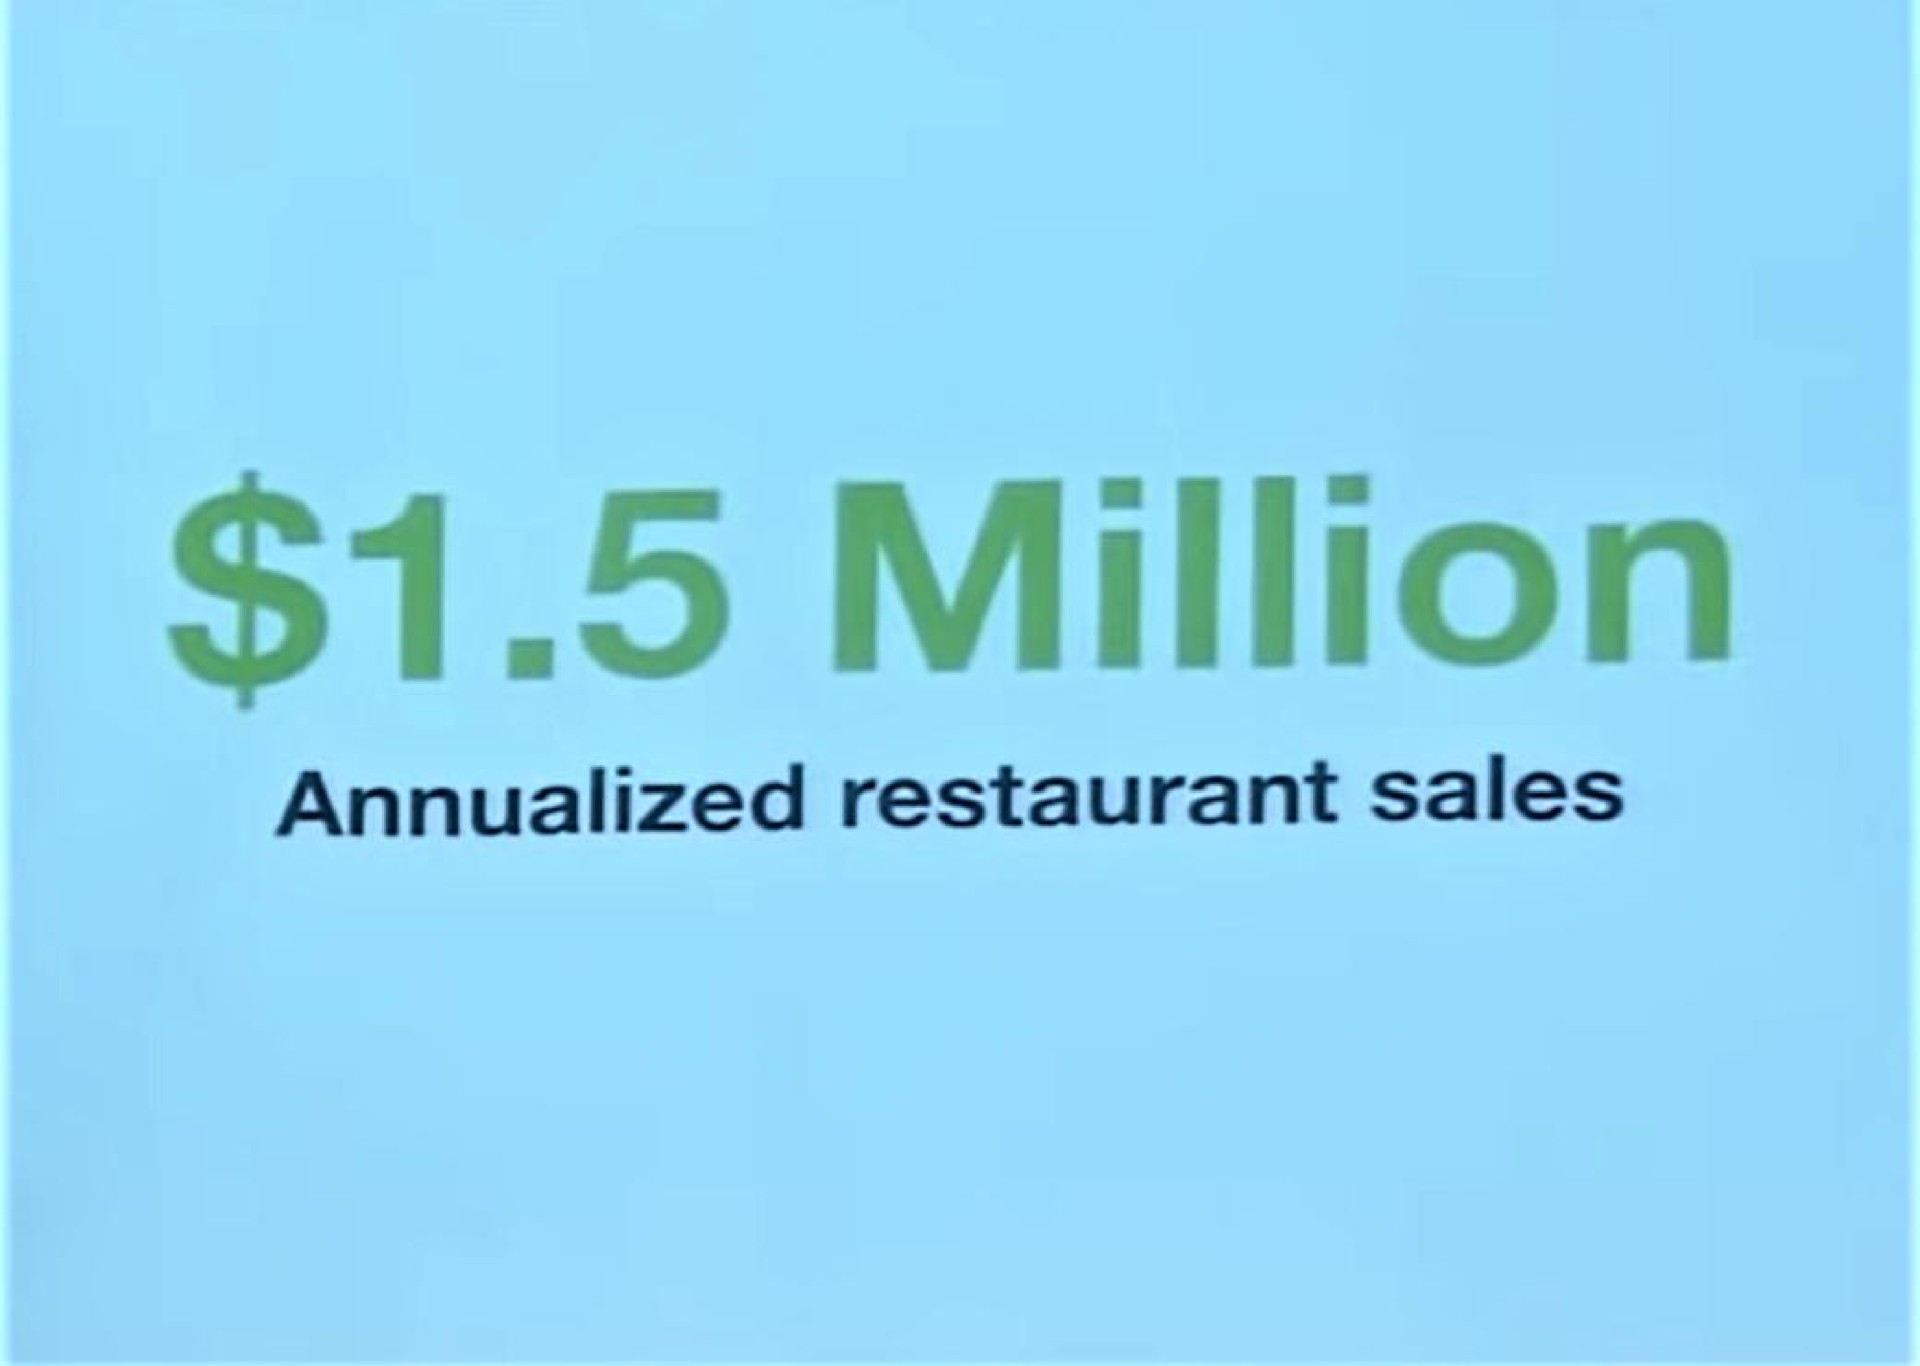 million restaurant sales | DoorDash